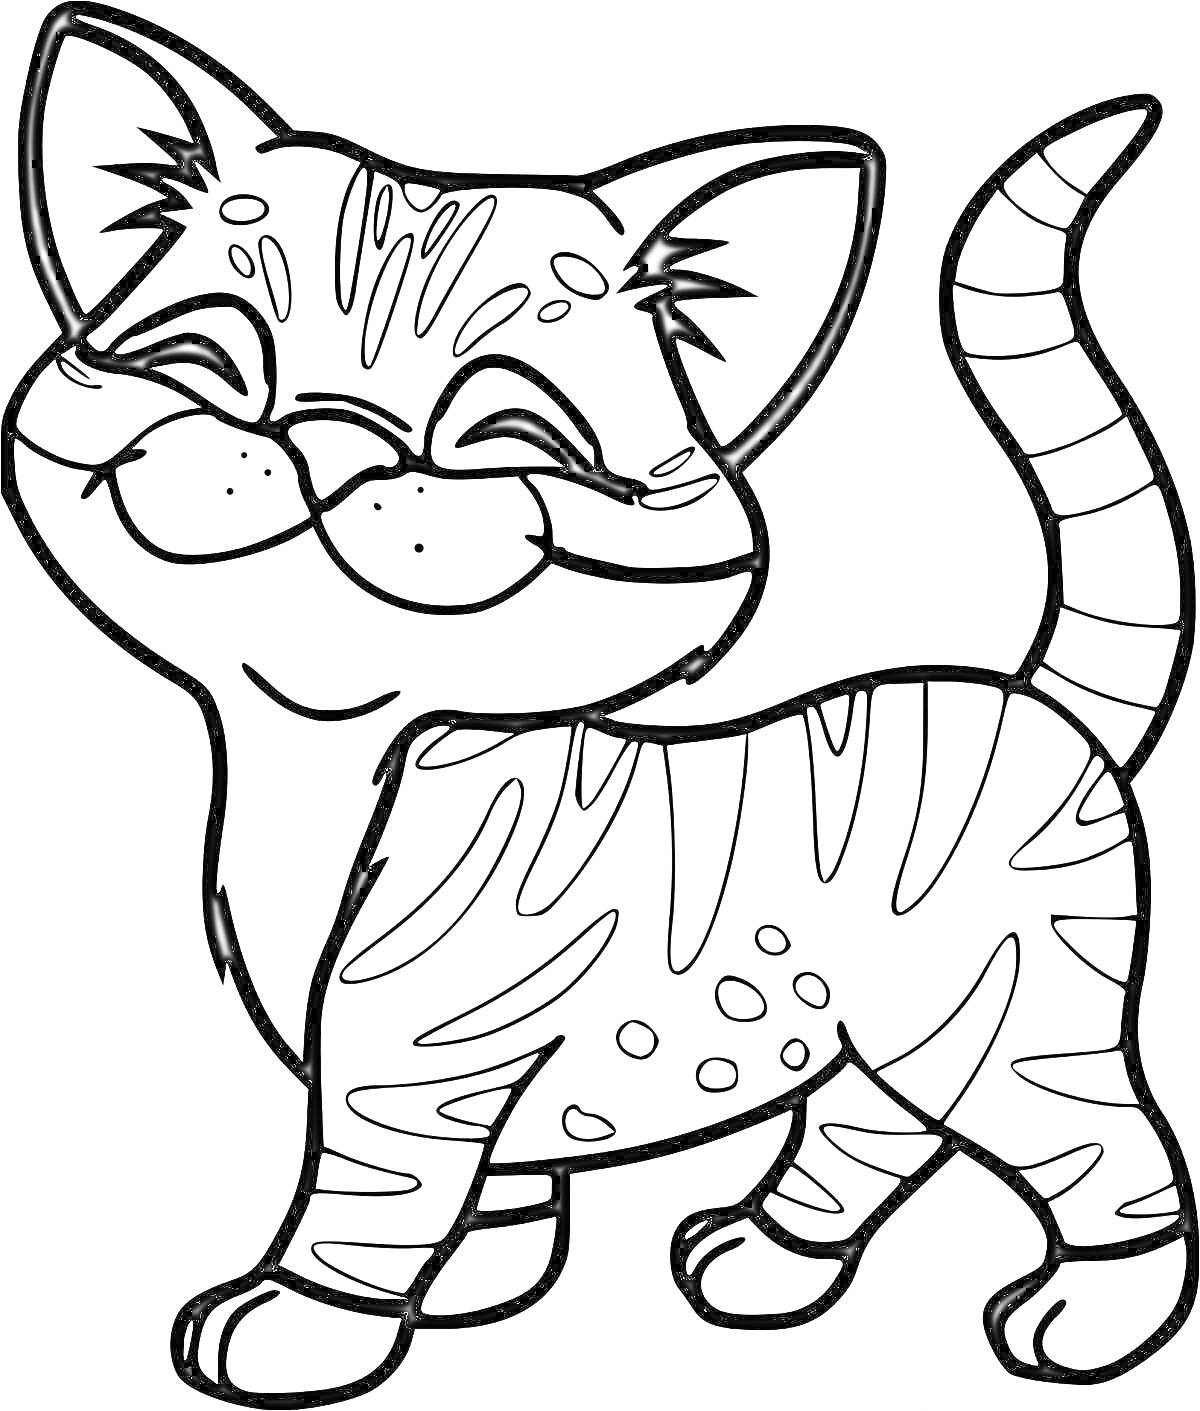 Раскраска улыбающийся полосатый кот с пятнами и поднятым хвостом